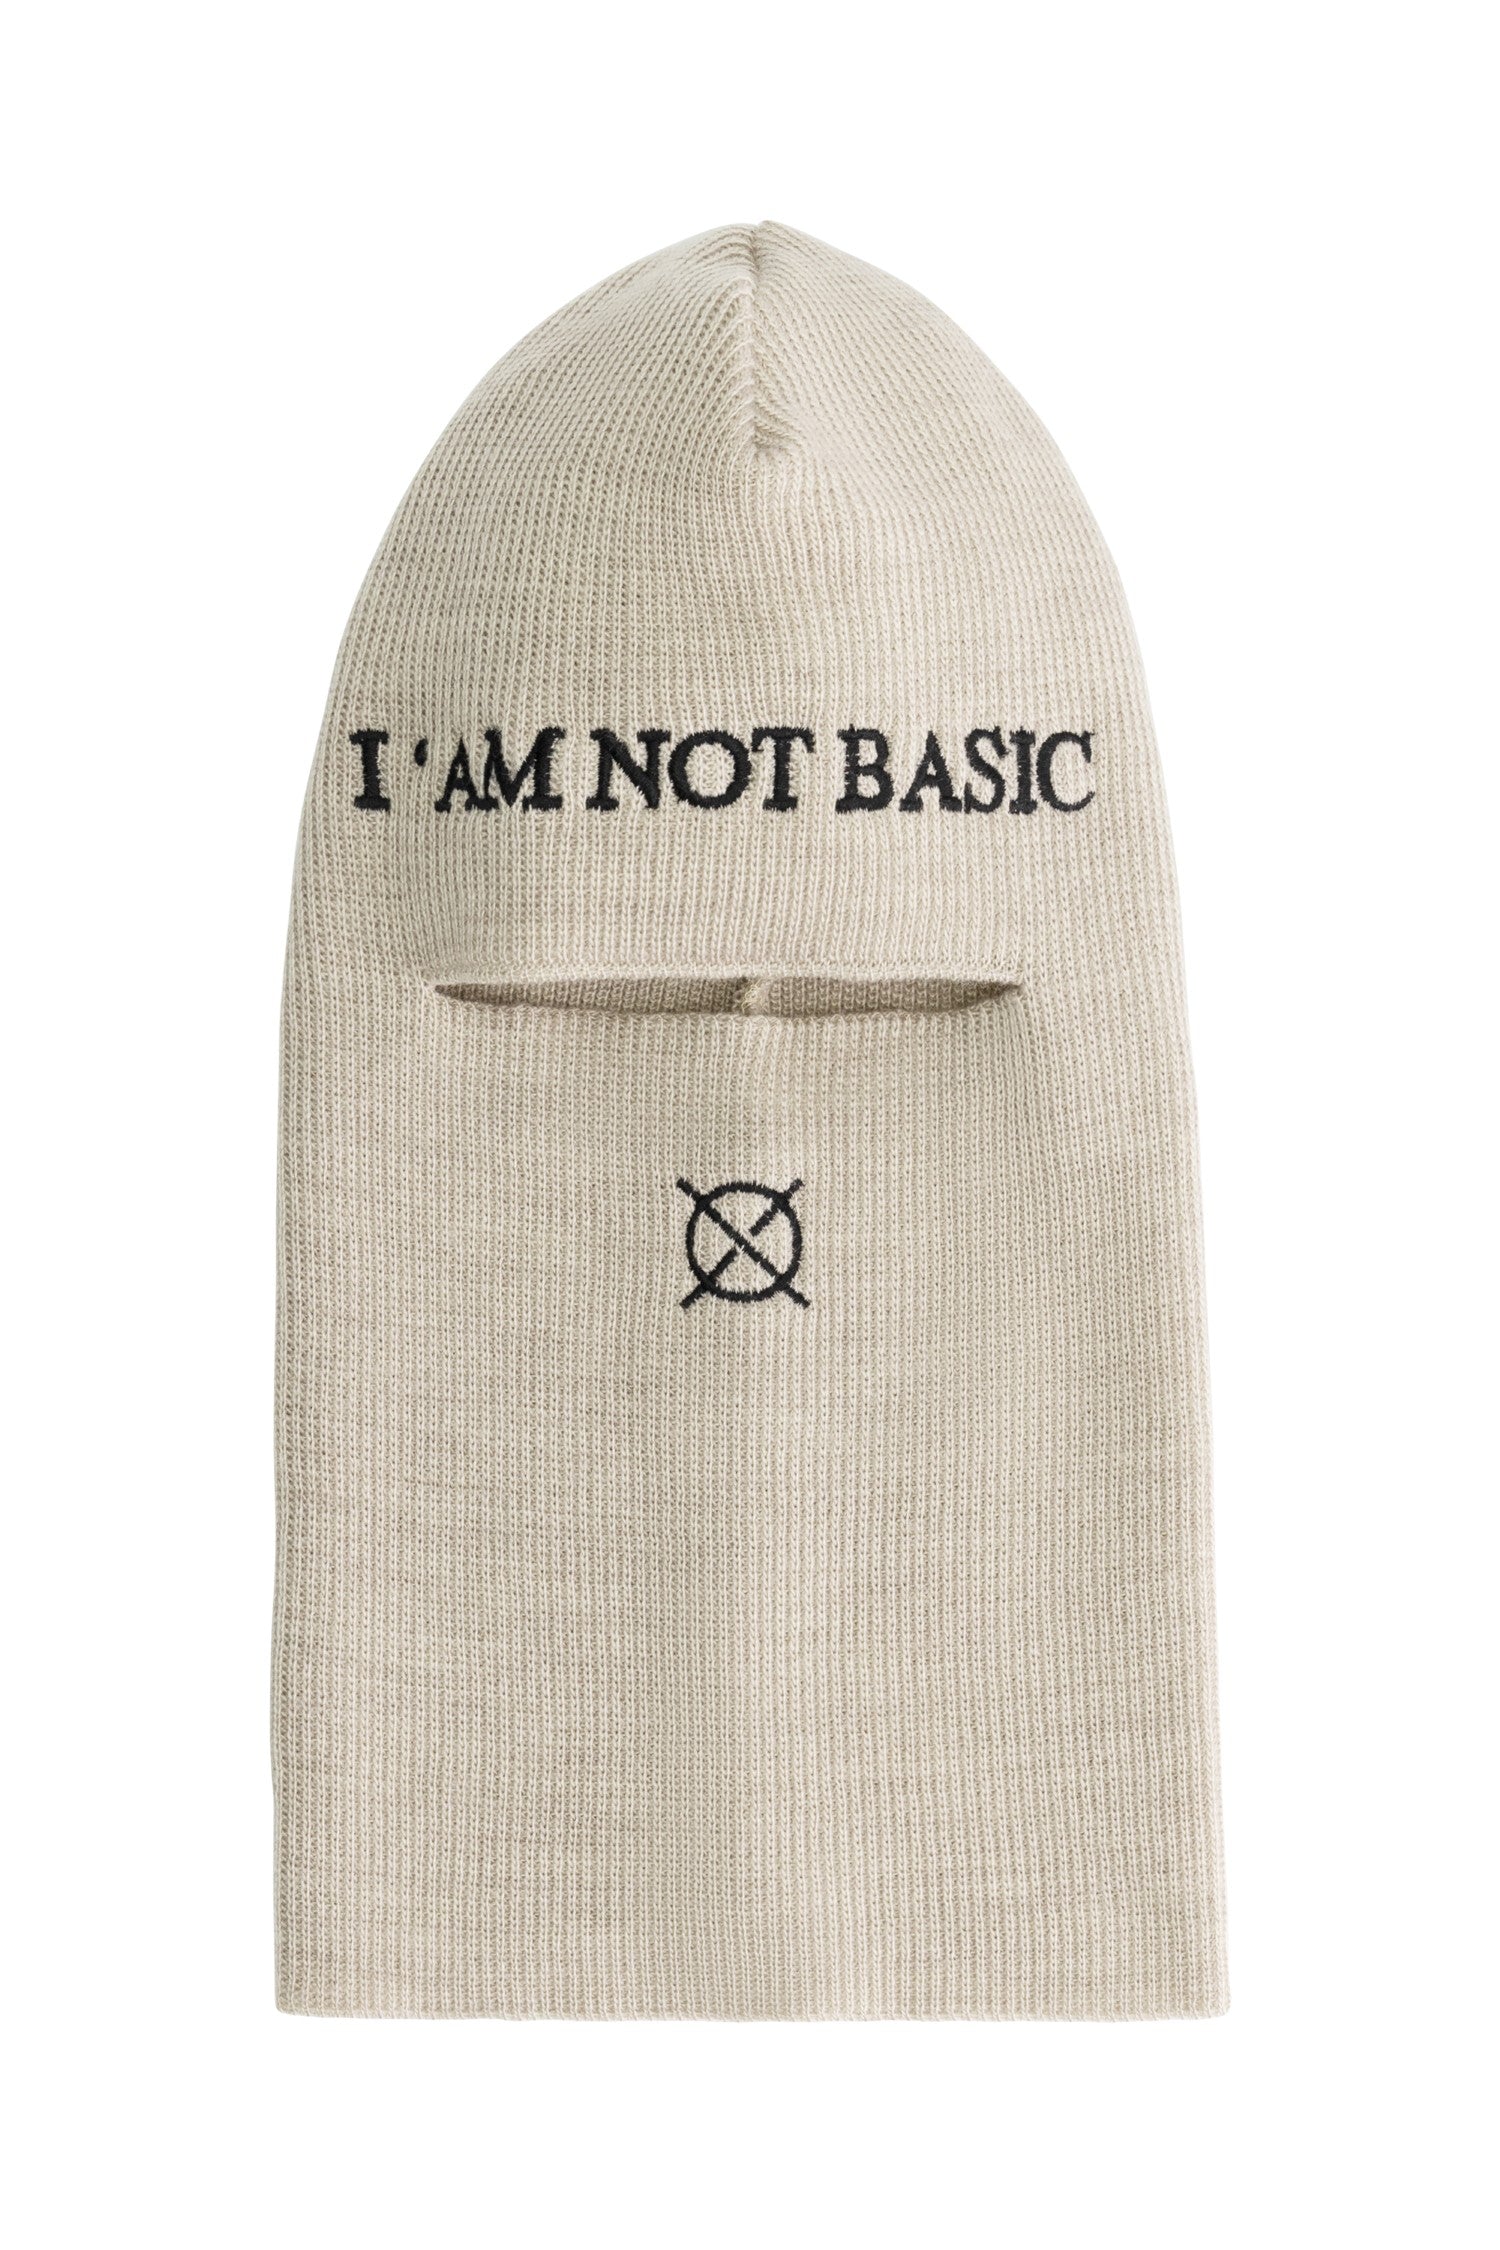 'I'AM NOT BASIC' Beige Balaclava